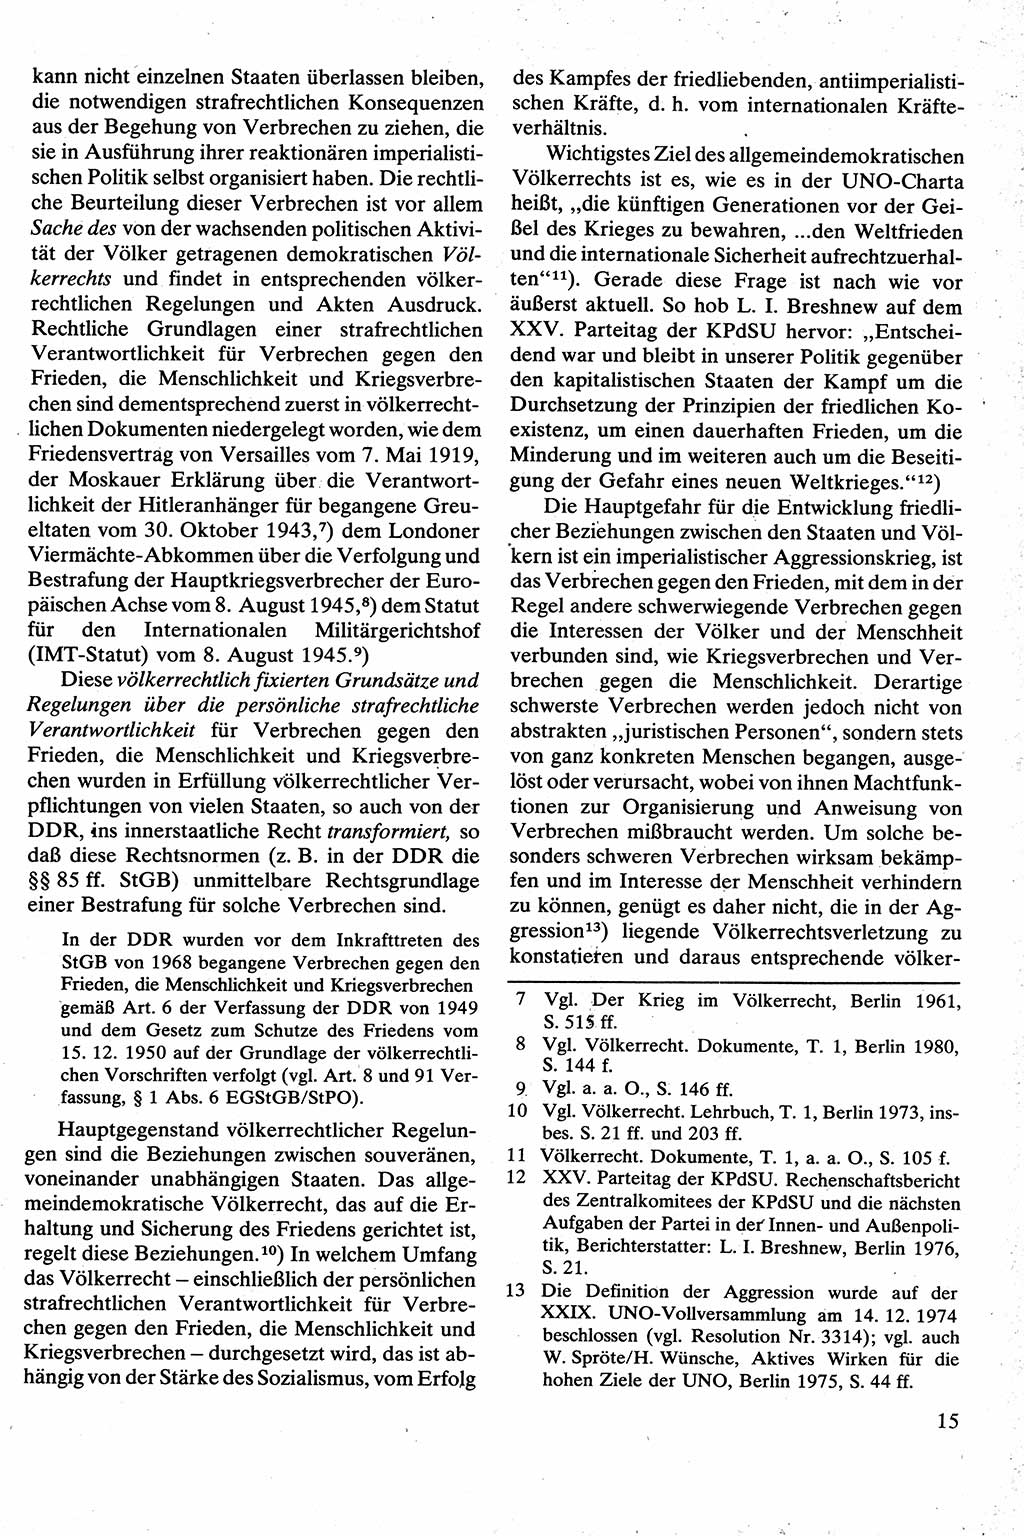 Strafrecht [Deutsche Demokratische Republik (DDR)], Besonderer Teil, Lehrbuch 1981, Seite 15 (Strafr. DDR BT Lb. 1981, S. 15)